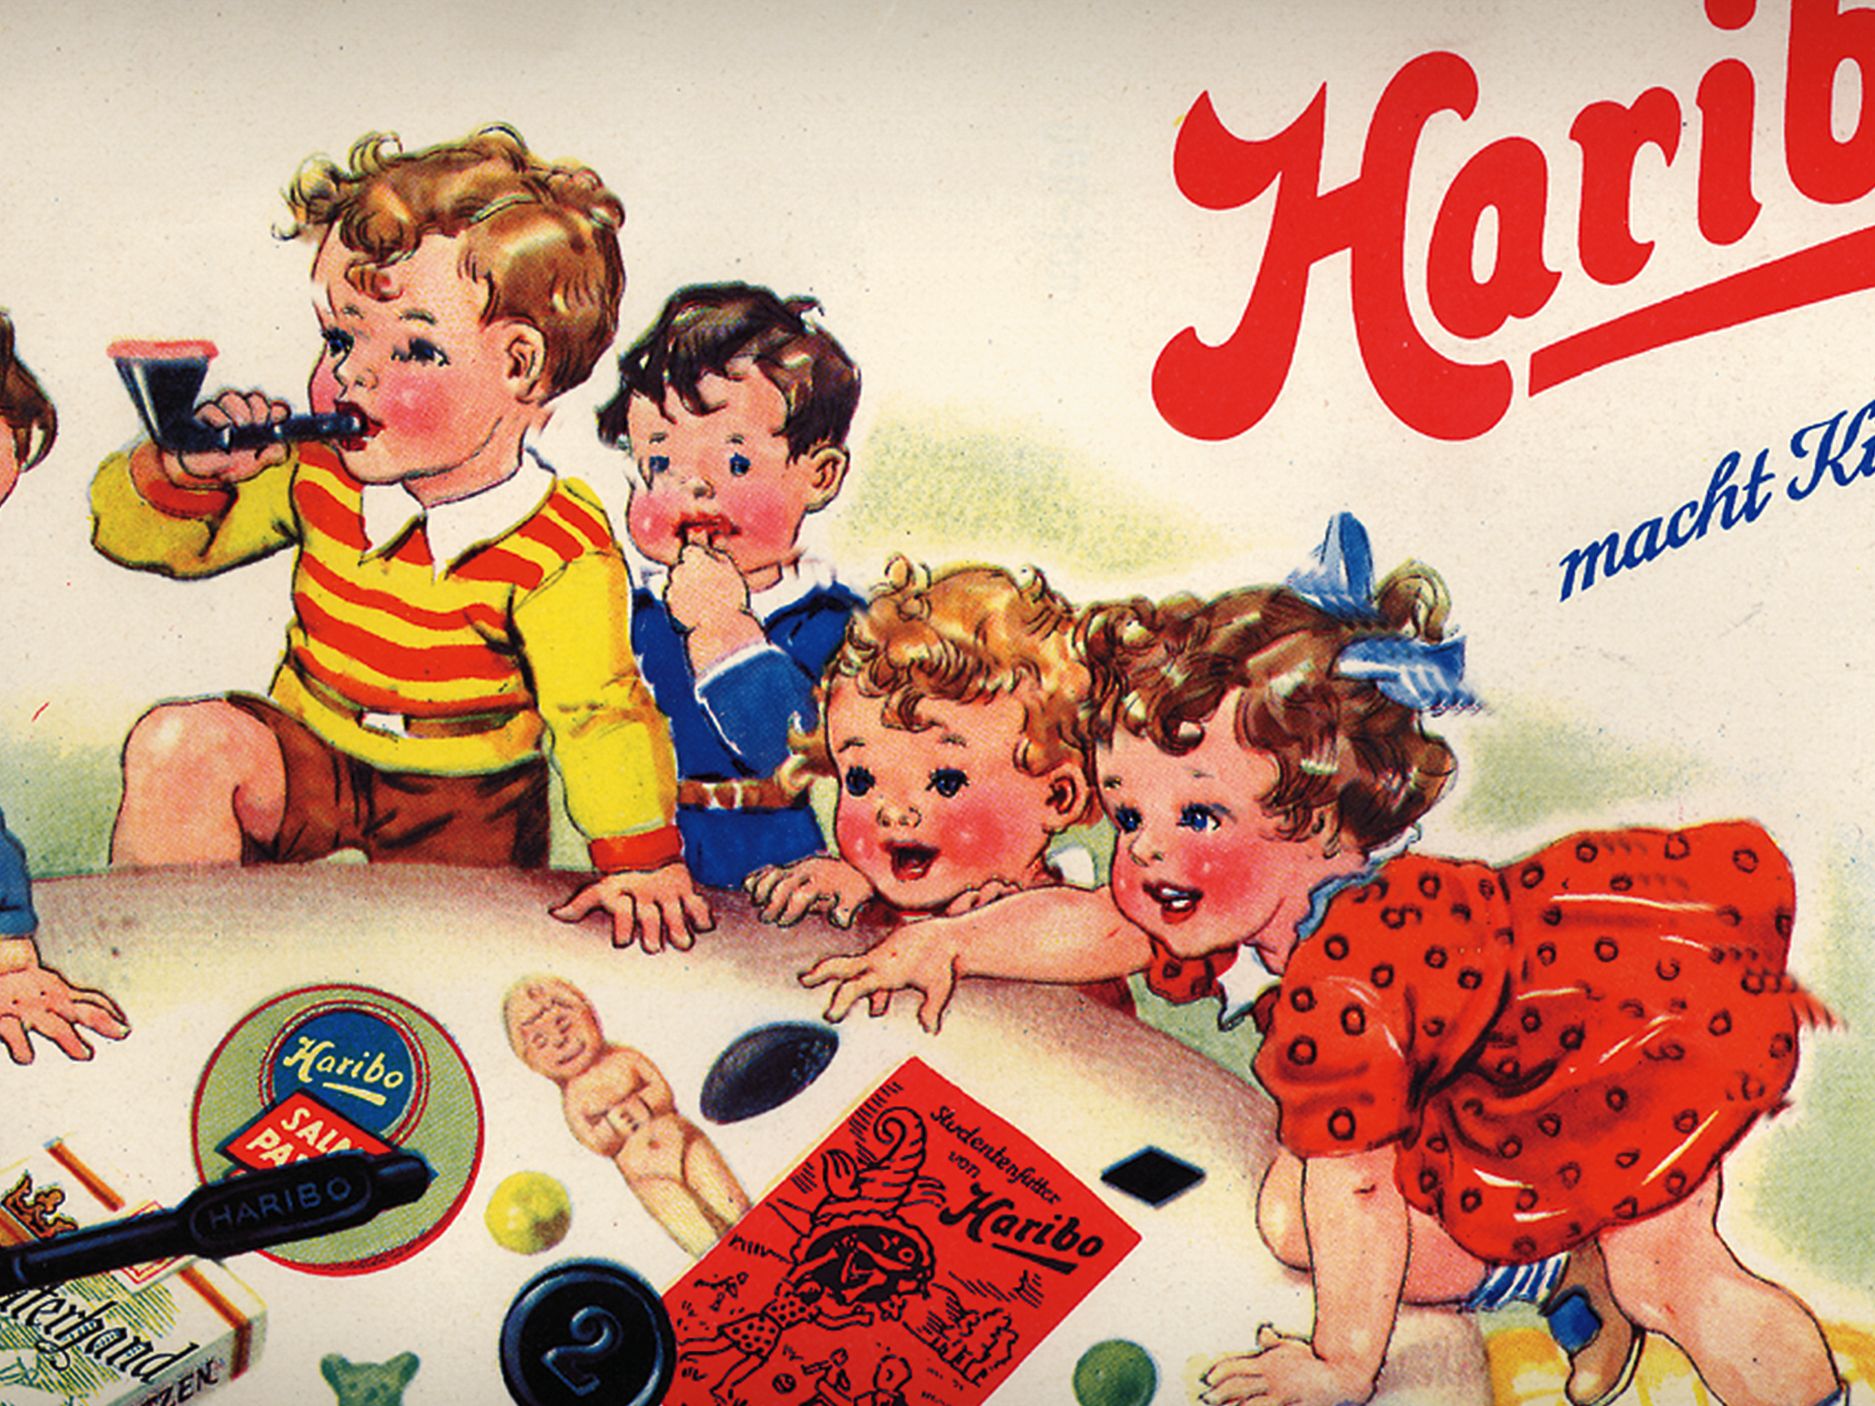 Historische Werbeanzeige von HARIBO, Kinder spielen mit Gummibärchen und Lakritz